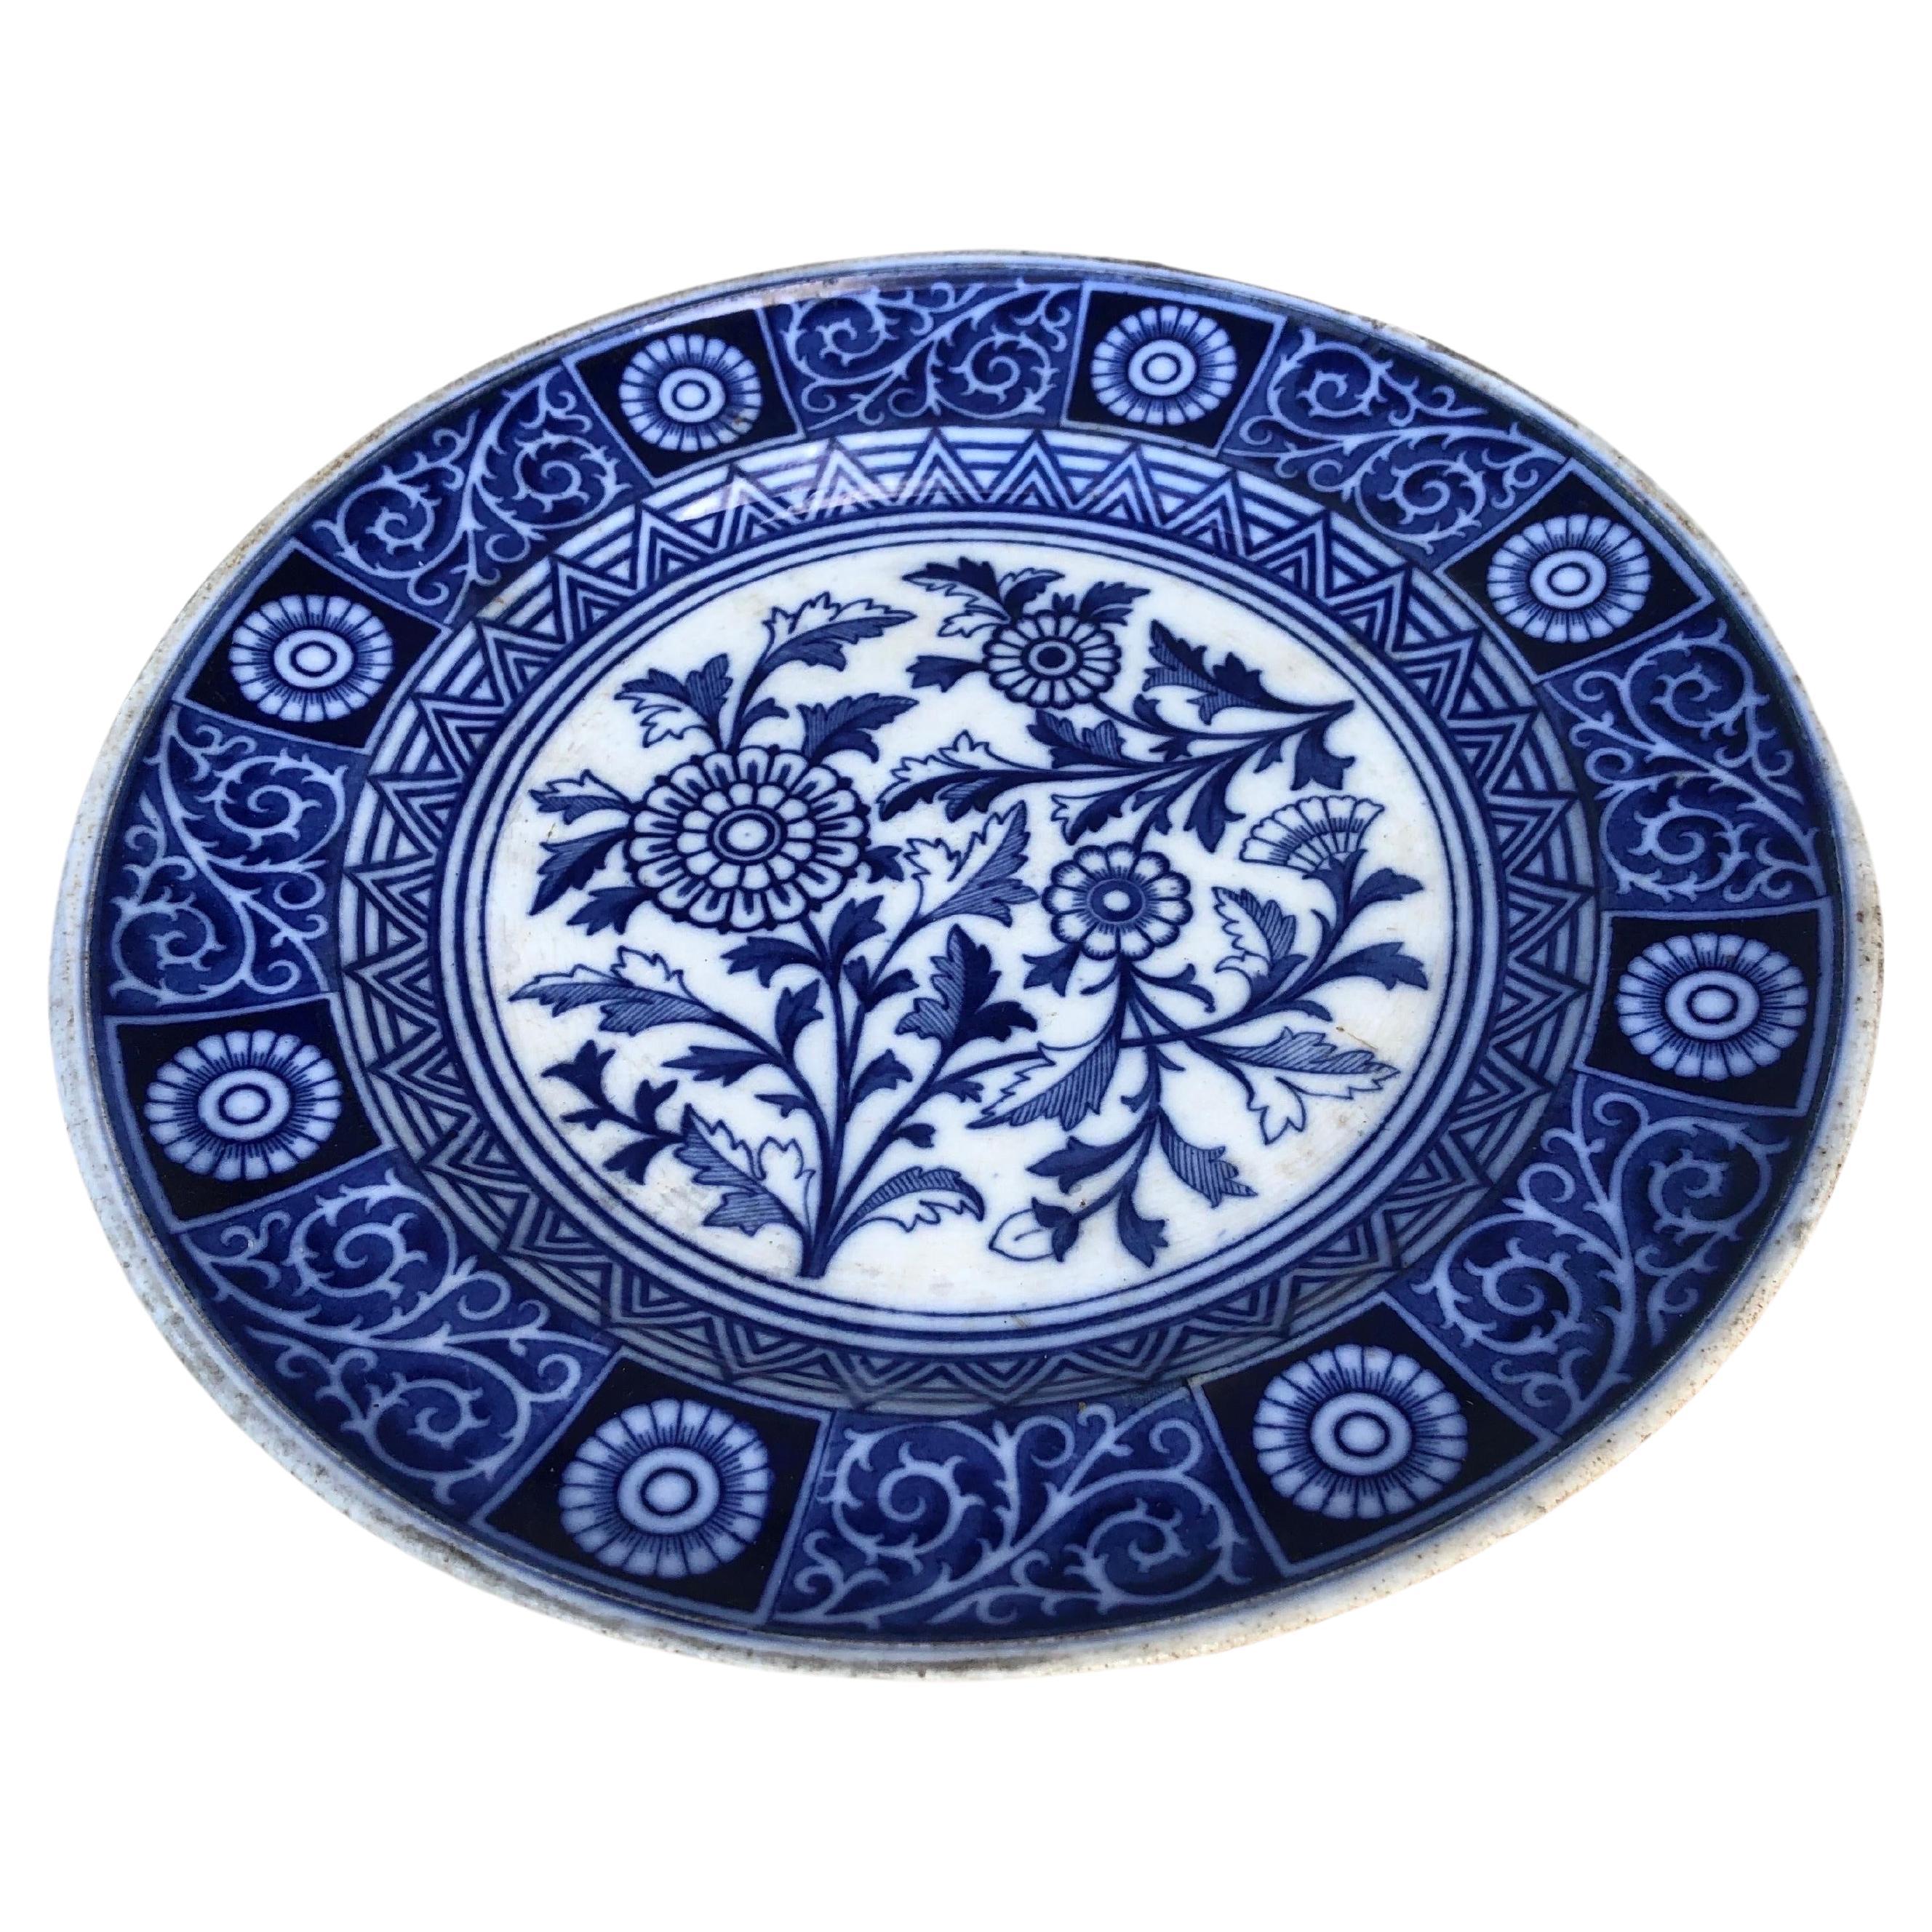 Plat à marguerite bleu et blanc du 19e siècle signé Minton.